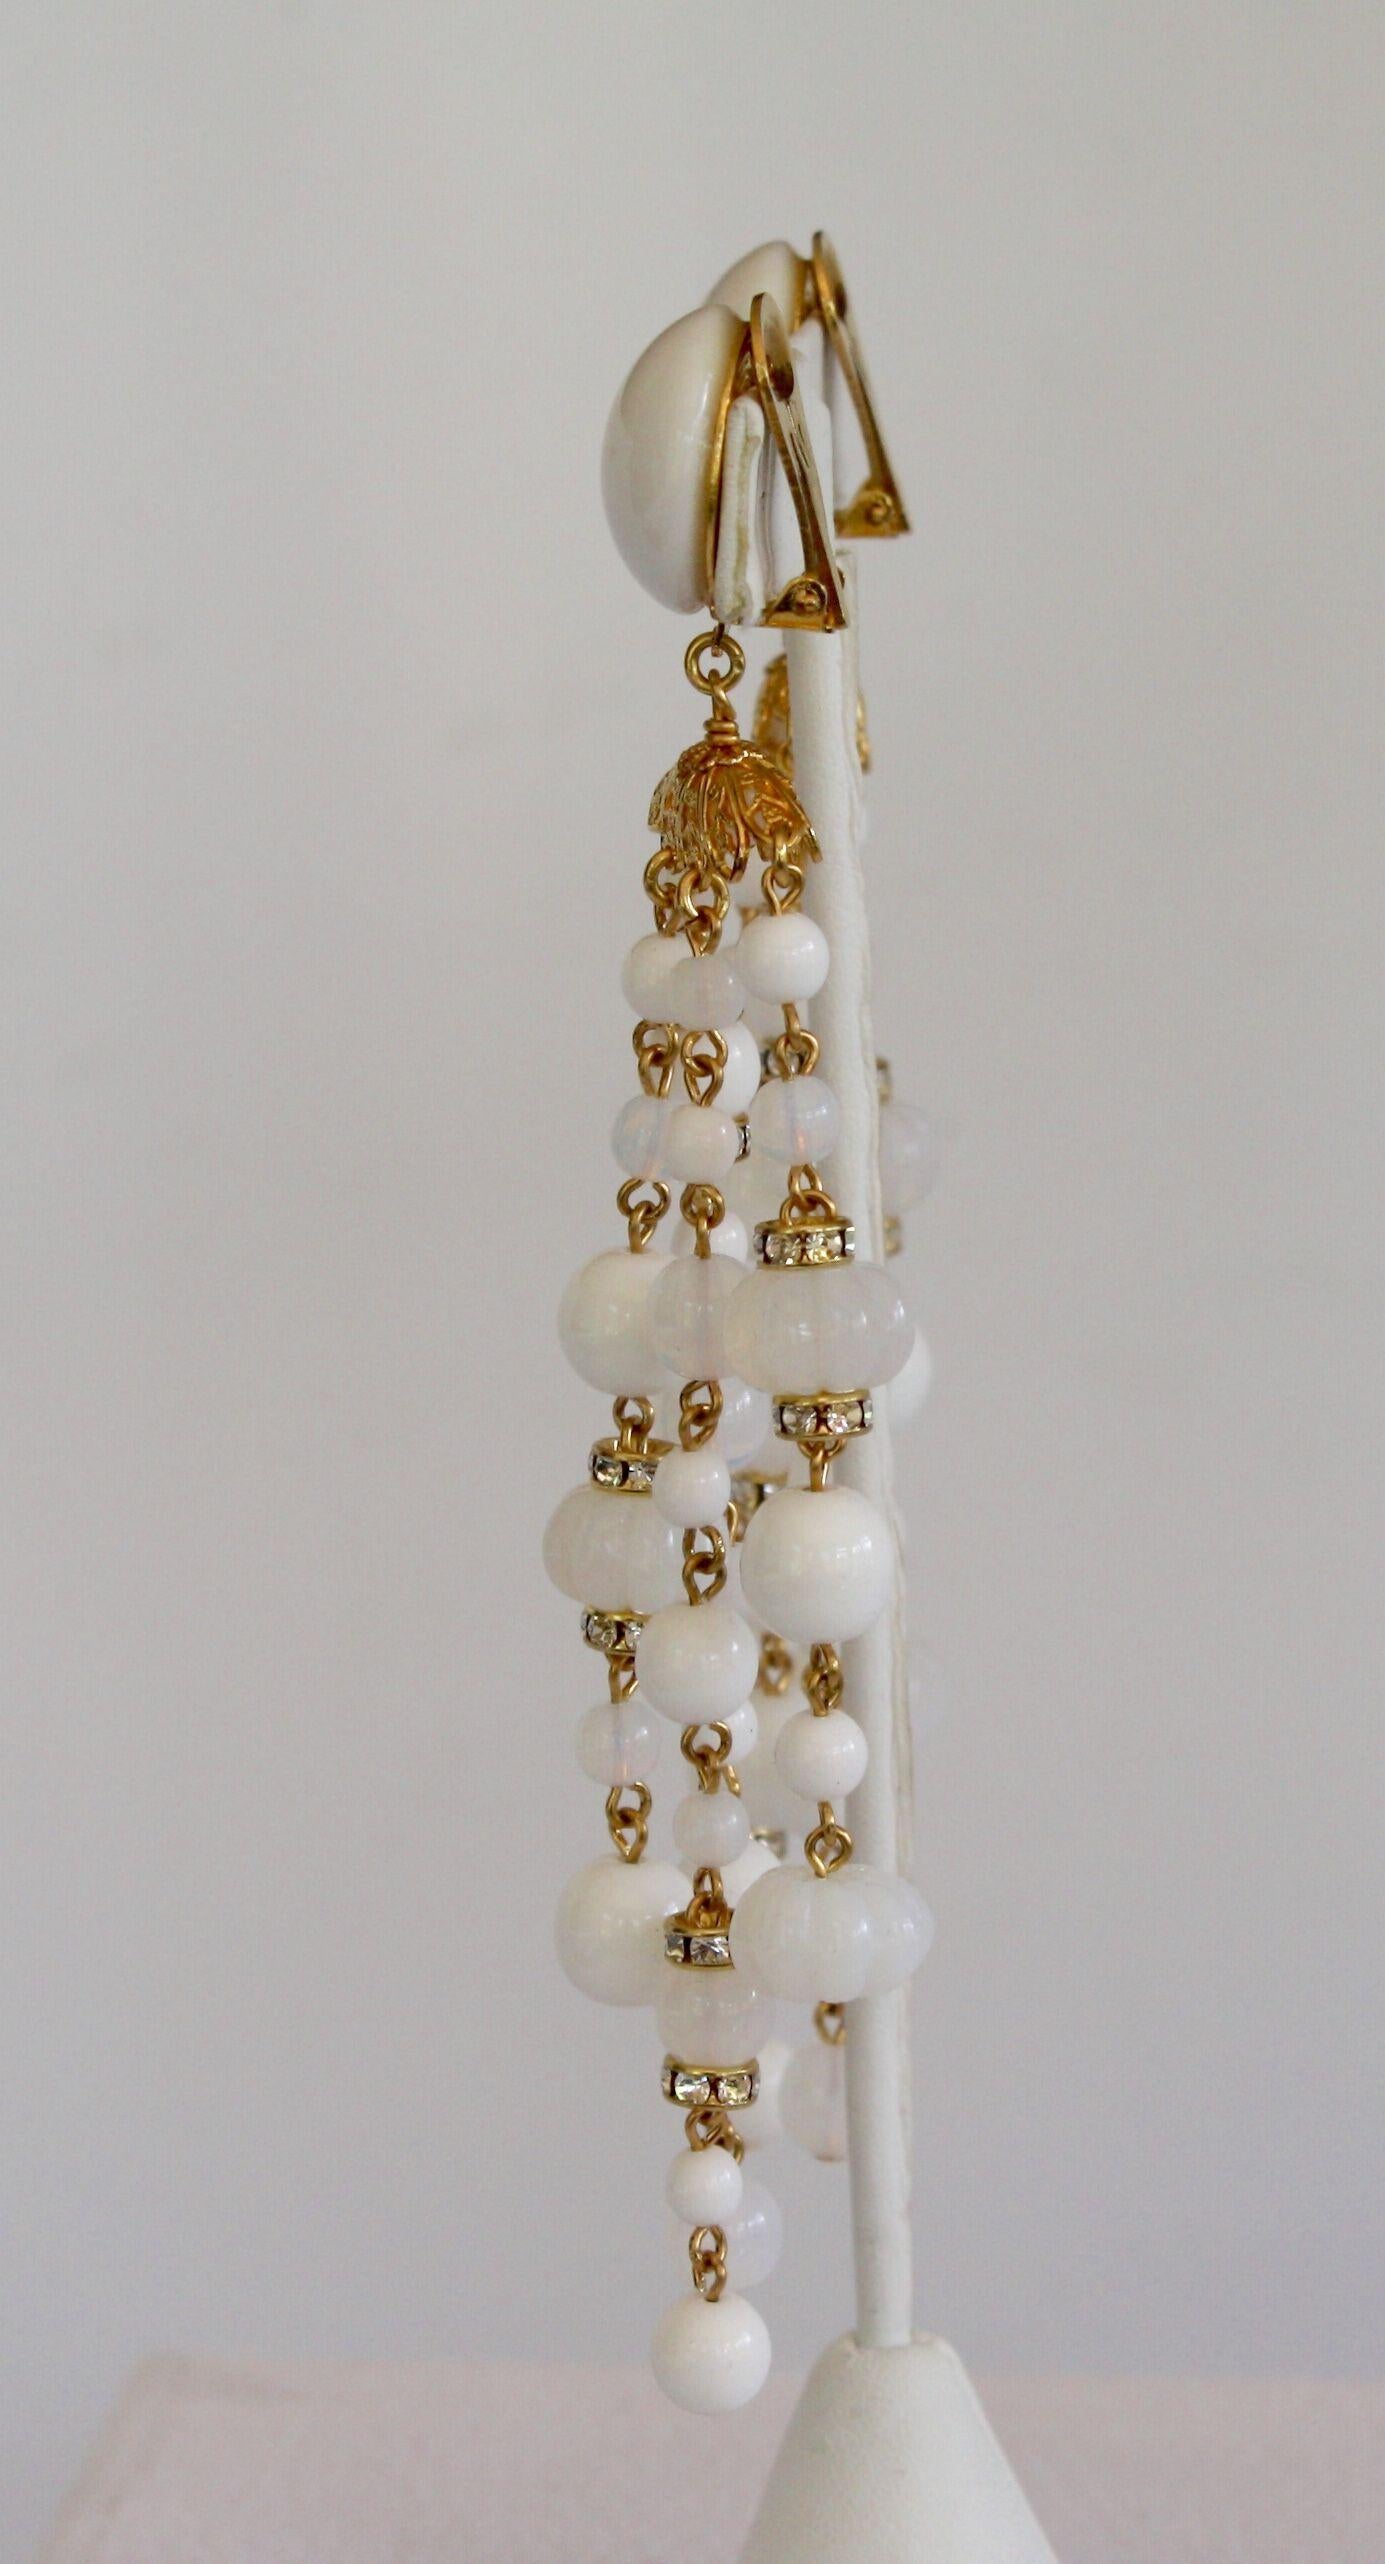 Handmade glass bead tassel clip earrings from Francoise Montague.